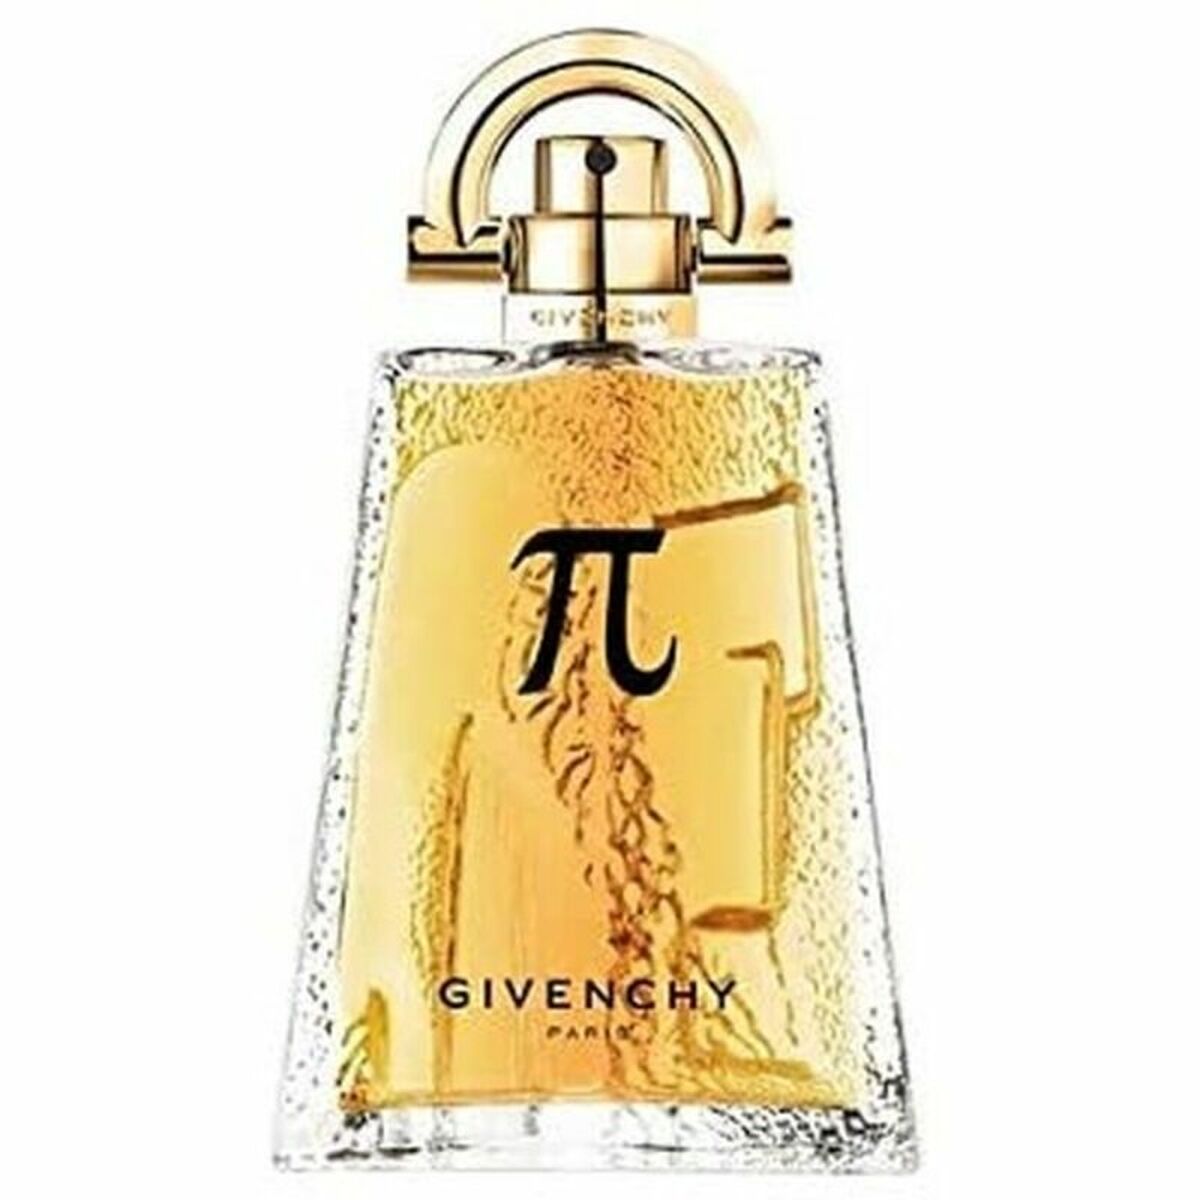 Men's Perfume Givenchy Pi EDT 50 ml